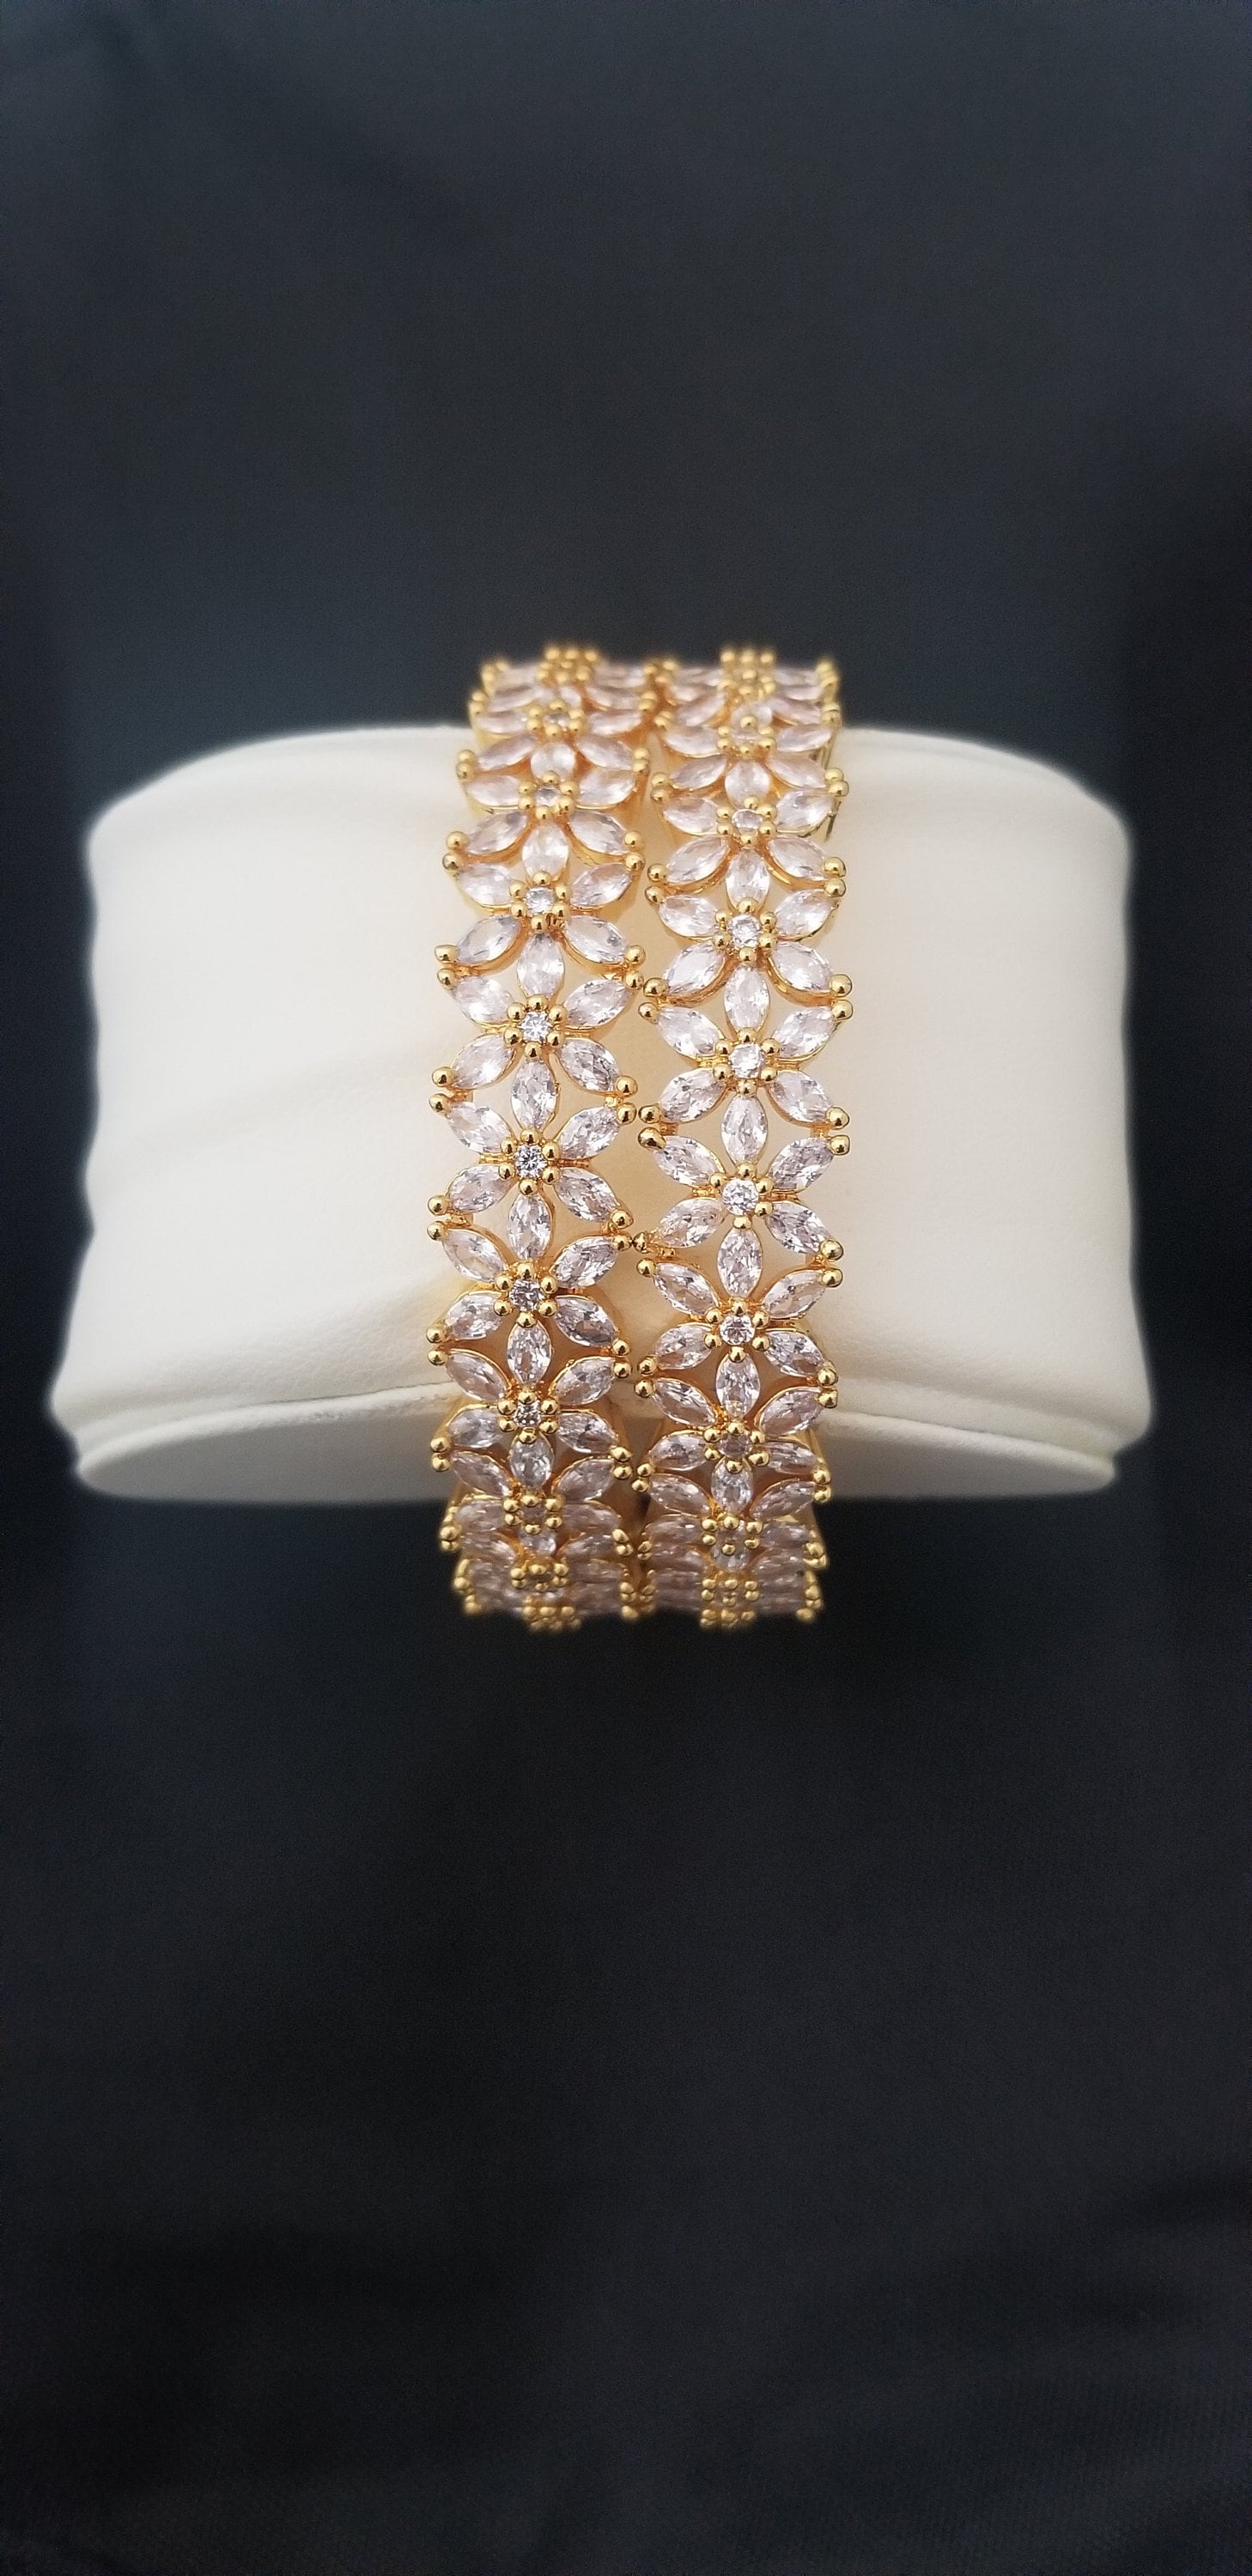 Premium Quality Gold finish AD White stone flower design Bangles - Set of 2 bangles - Size 2.6